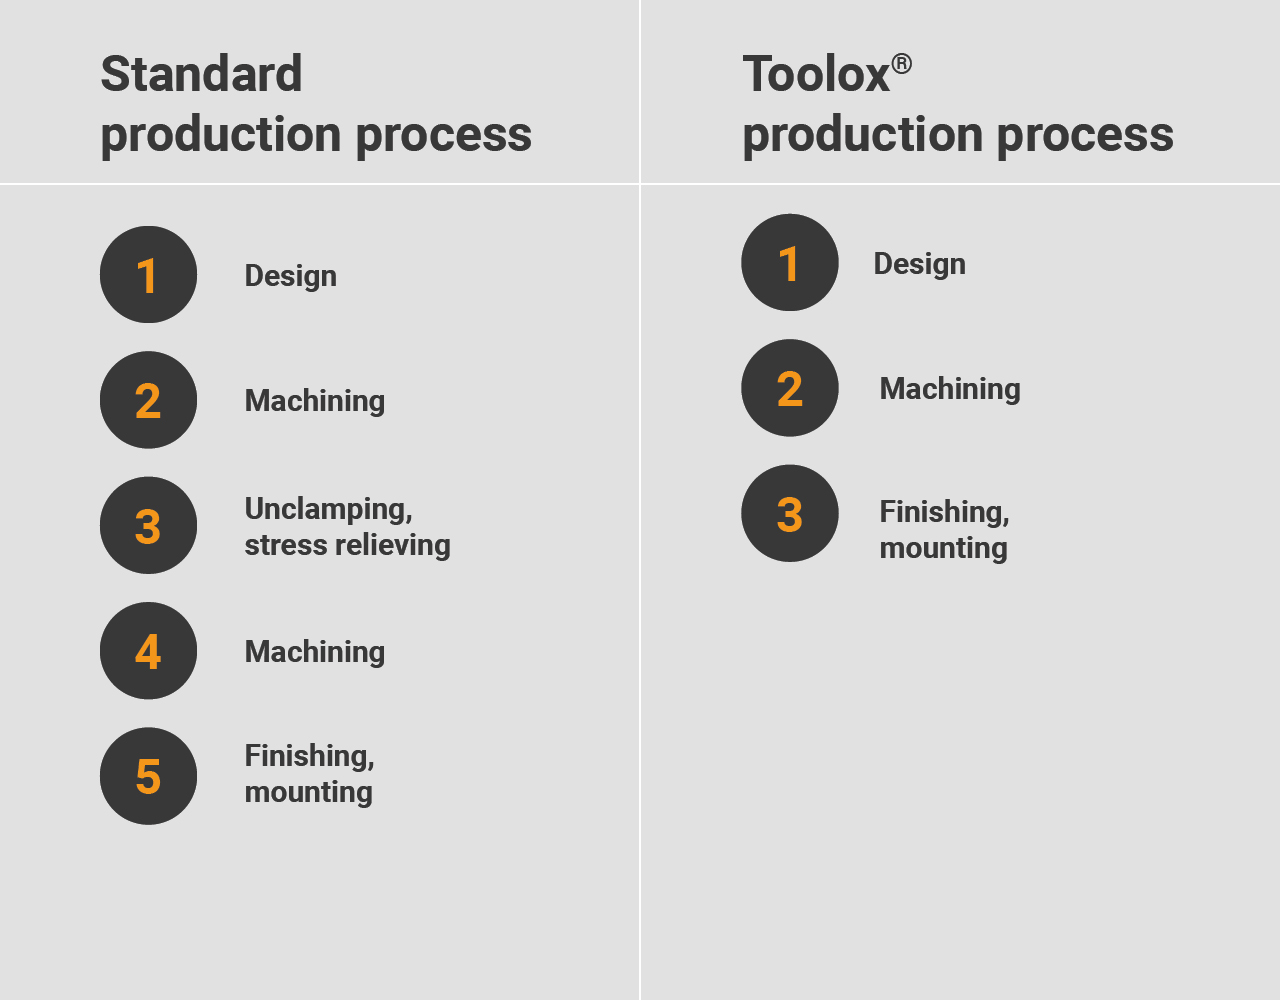 Proceso de producción Toolox frente al estándar